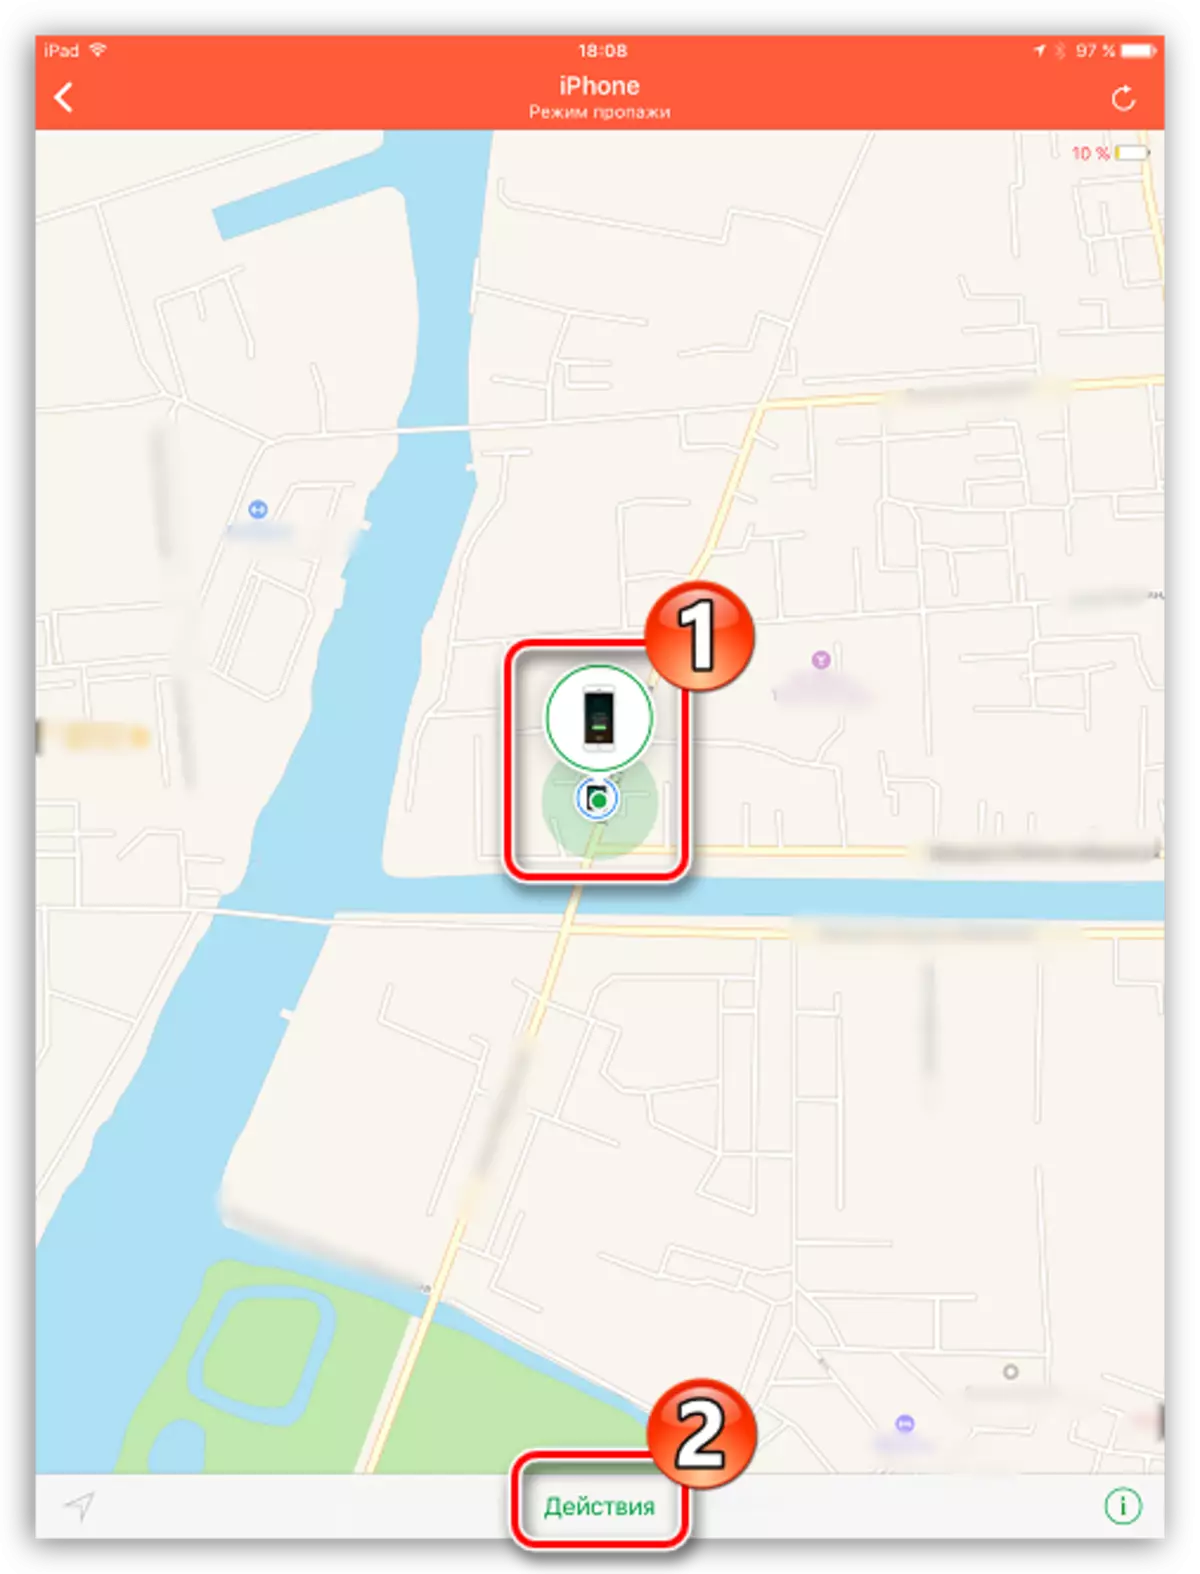 Ver localización iphone no mapa a través do iPad